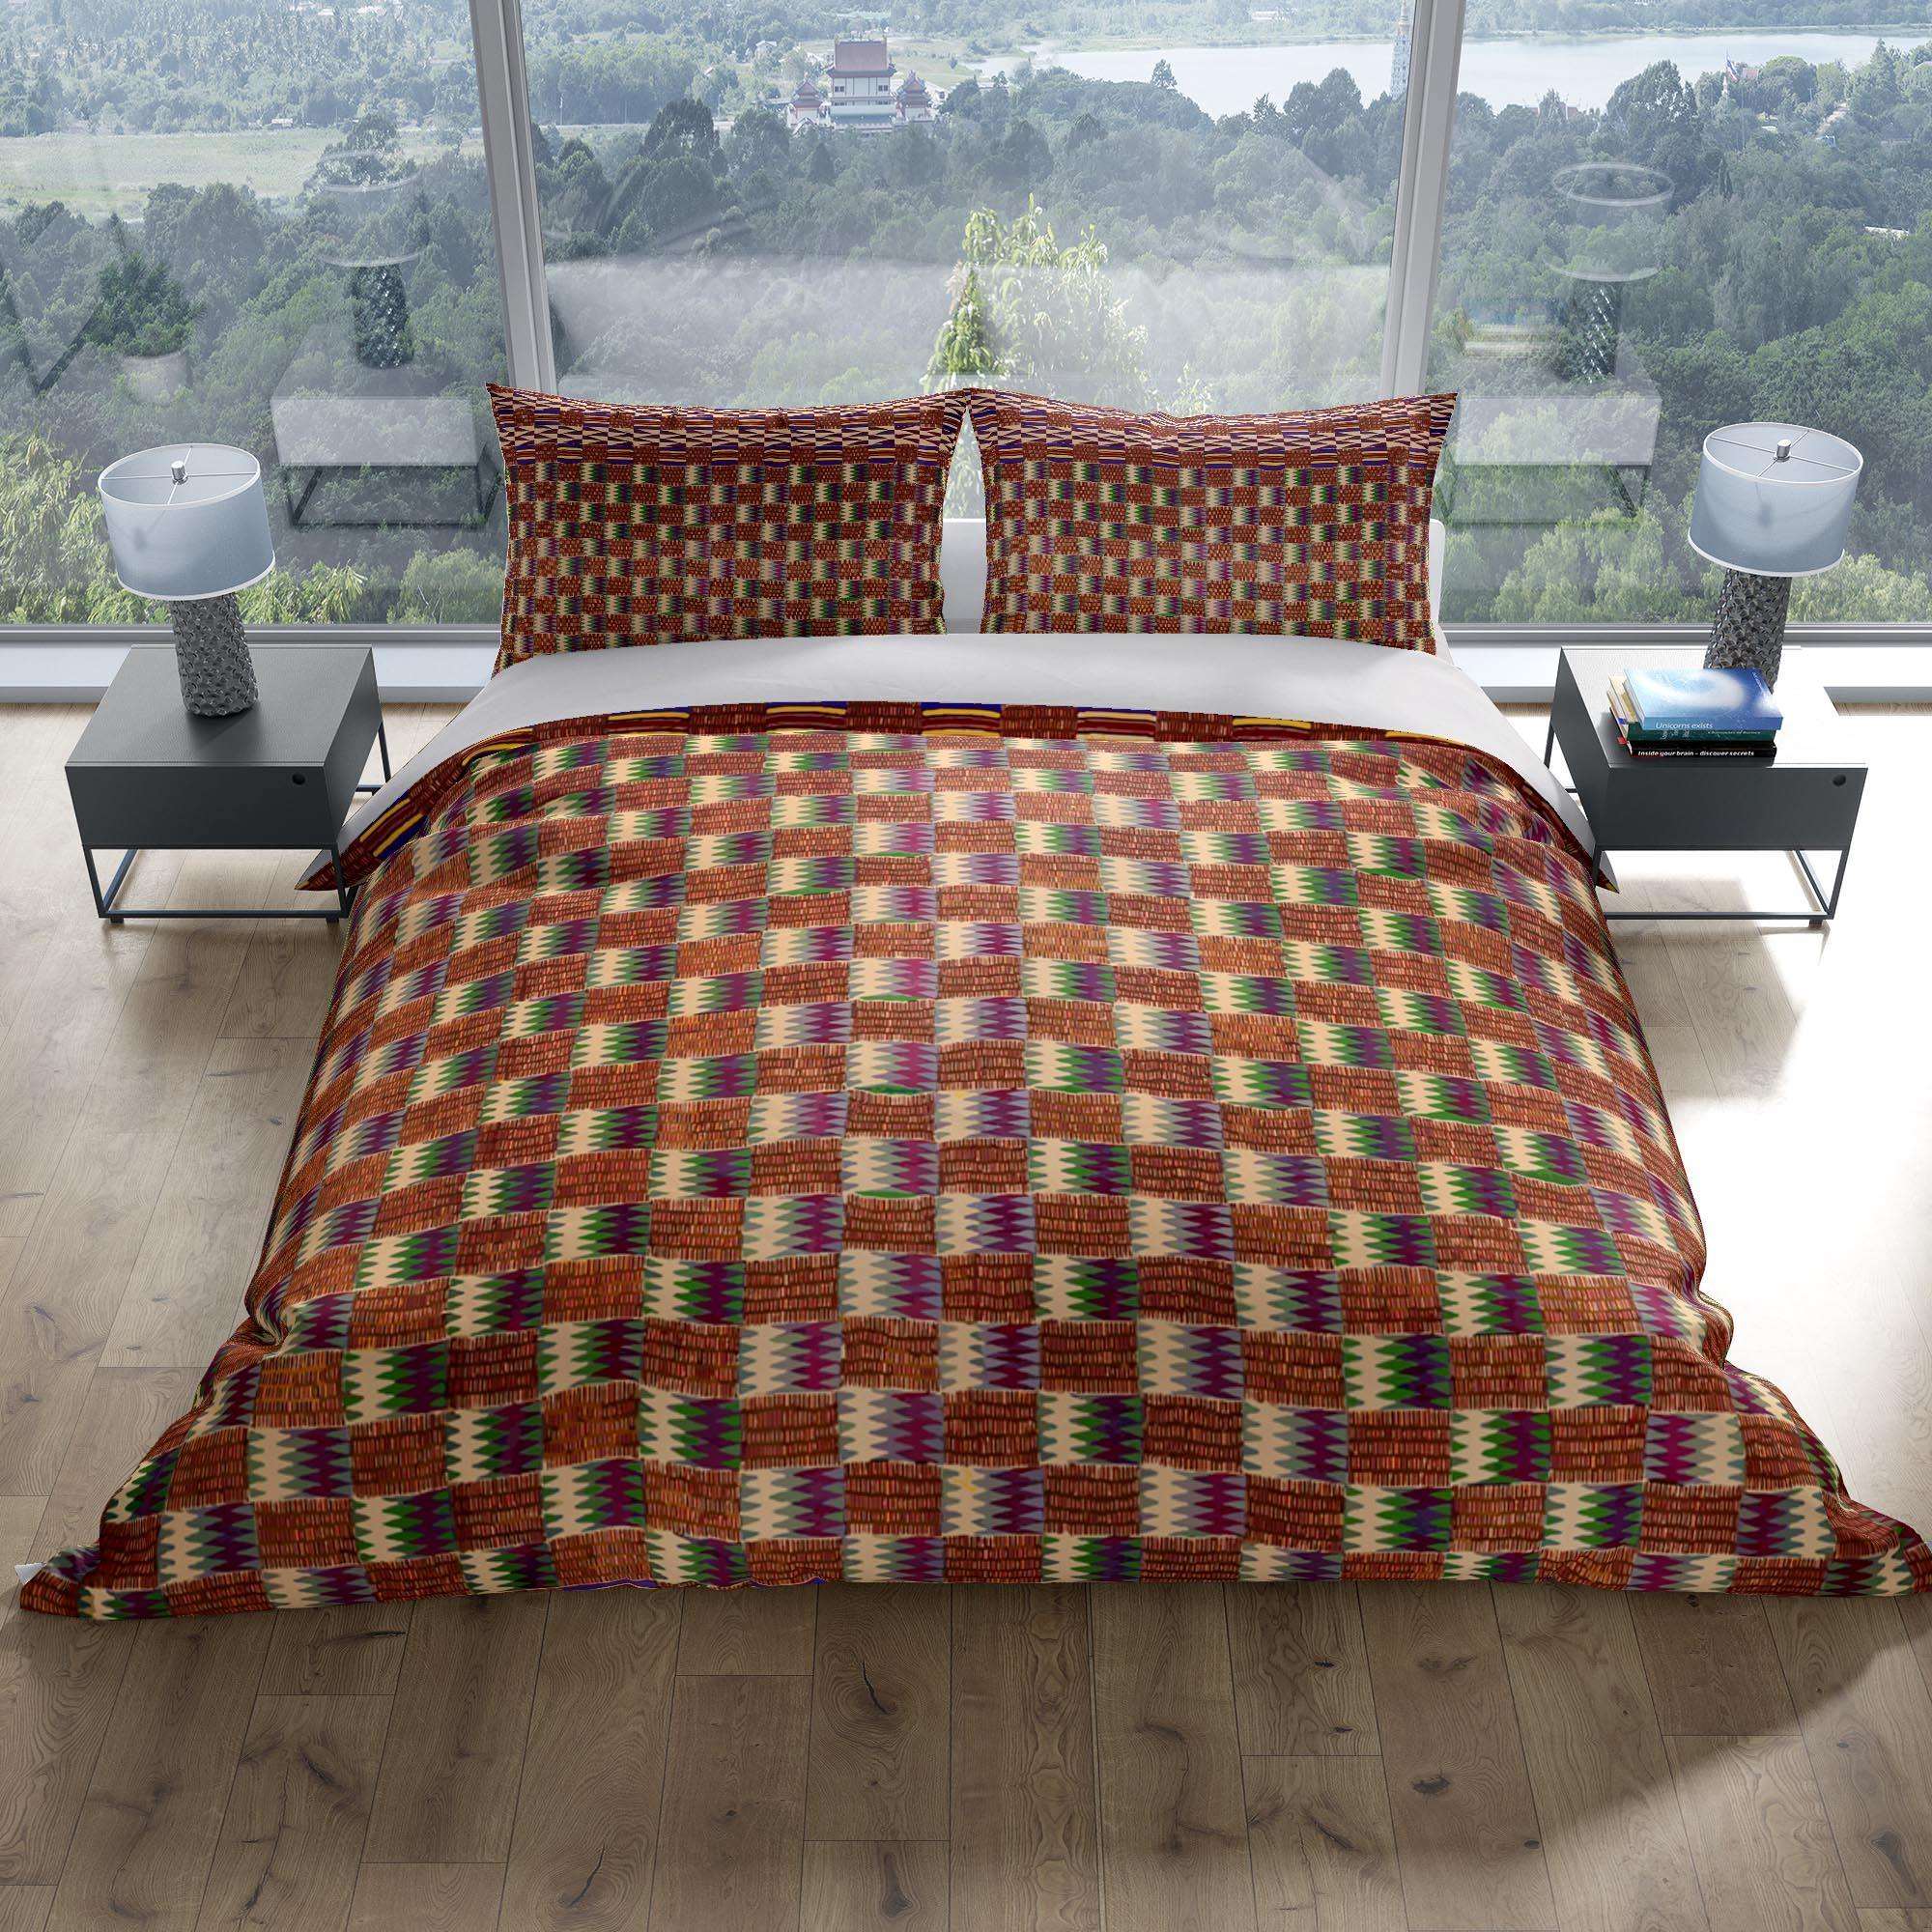 Bedding Set, Kente-Cloth African Inspired Design - Sacred Surreal